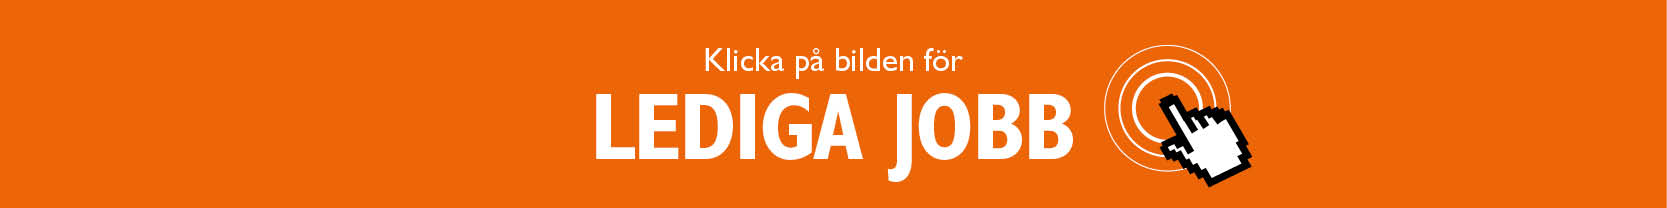 Färgplatta med text: Klicka för lediga jobb